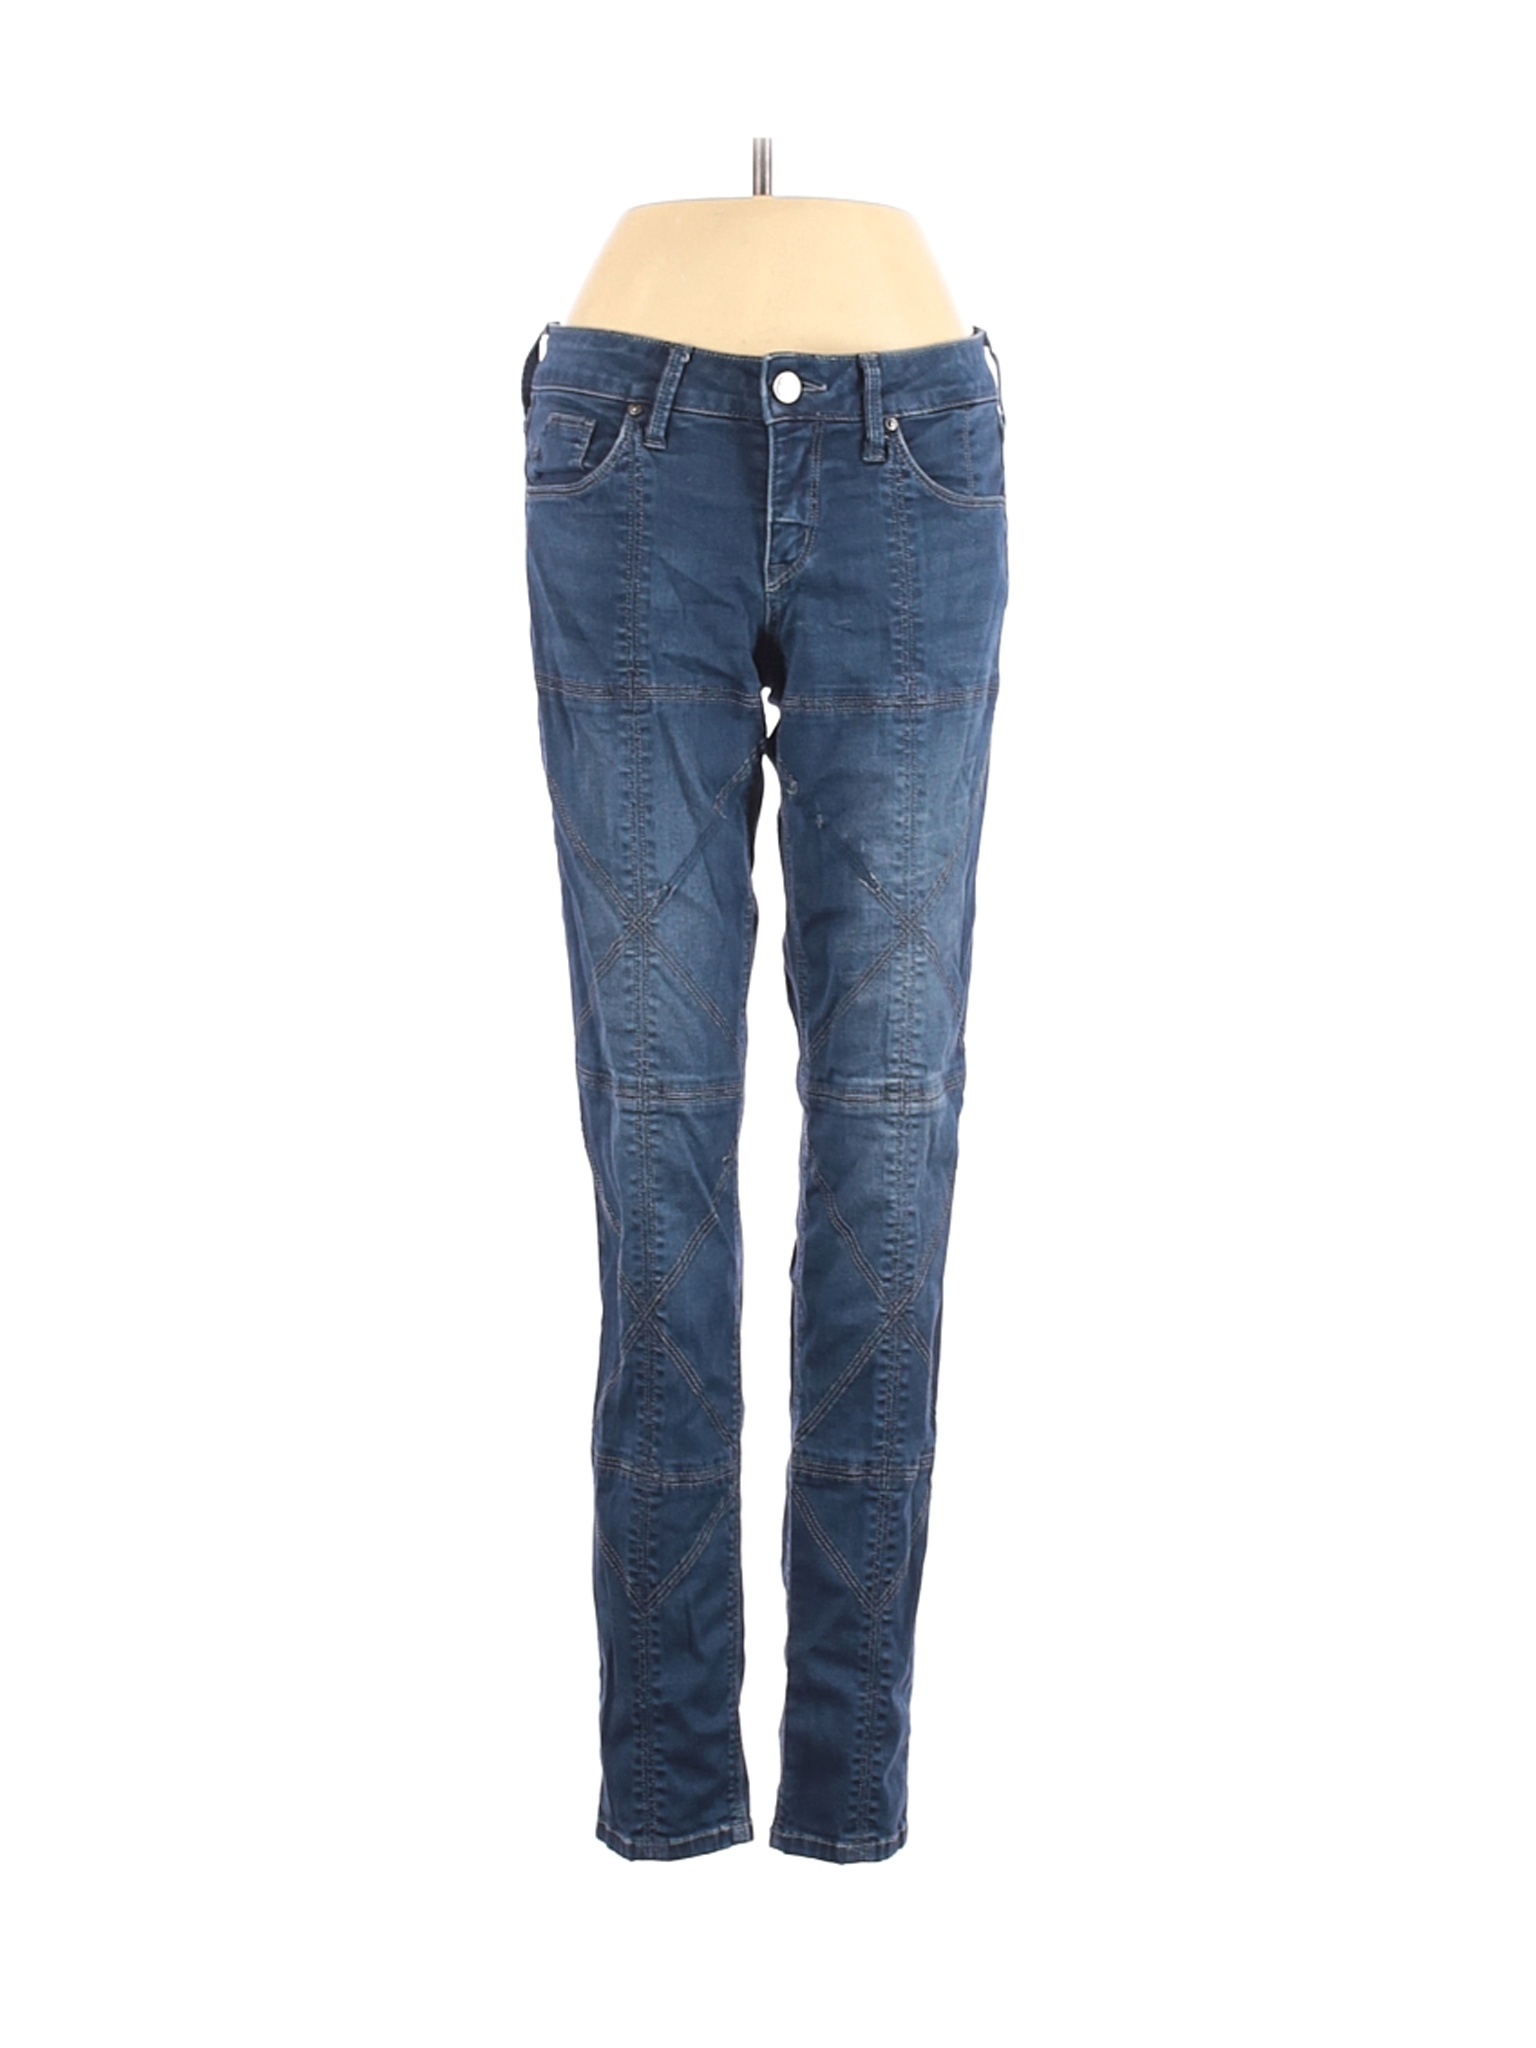 Solo Women Blue Jeans 24W | eBay